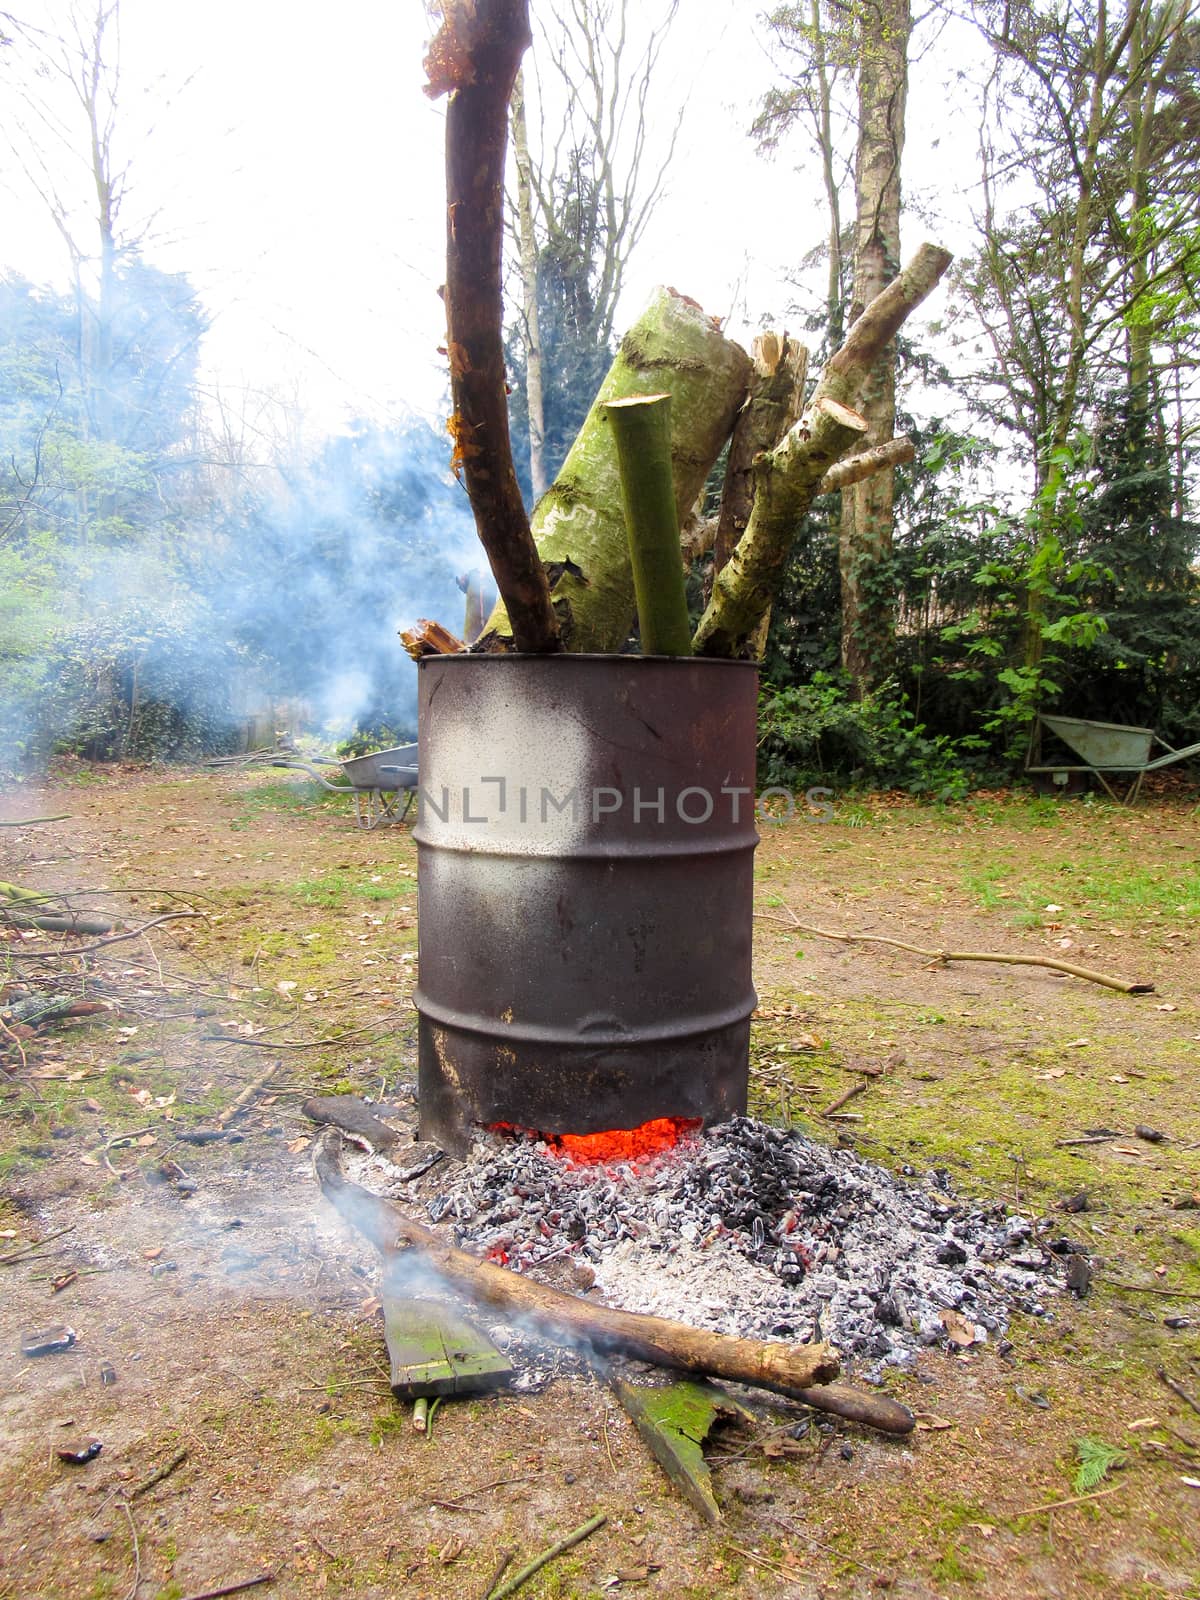 Barrel bonfire inside a forrest by bluiten